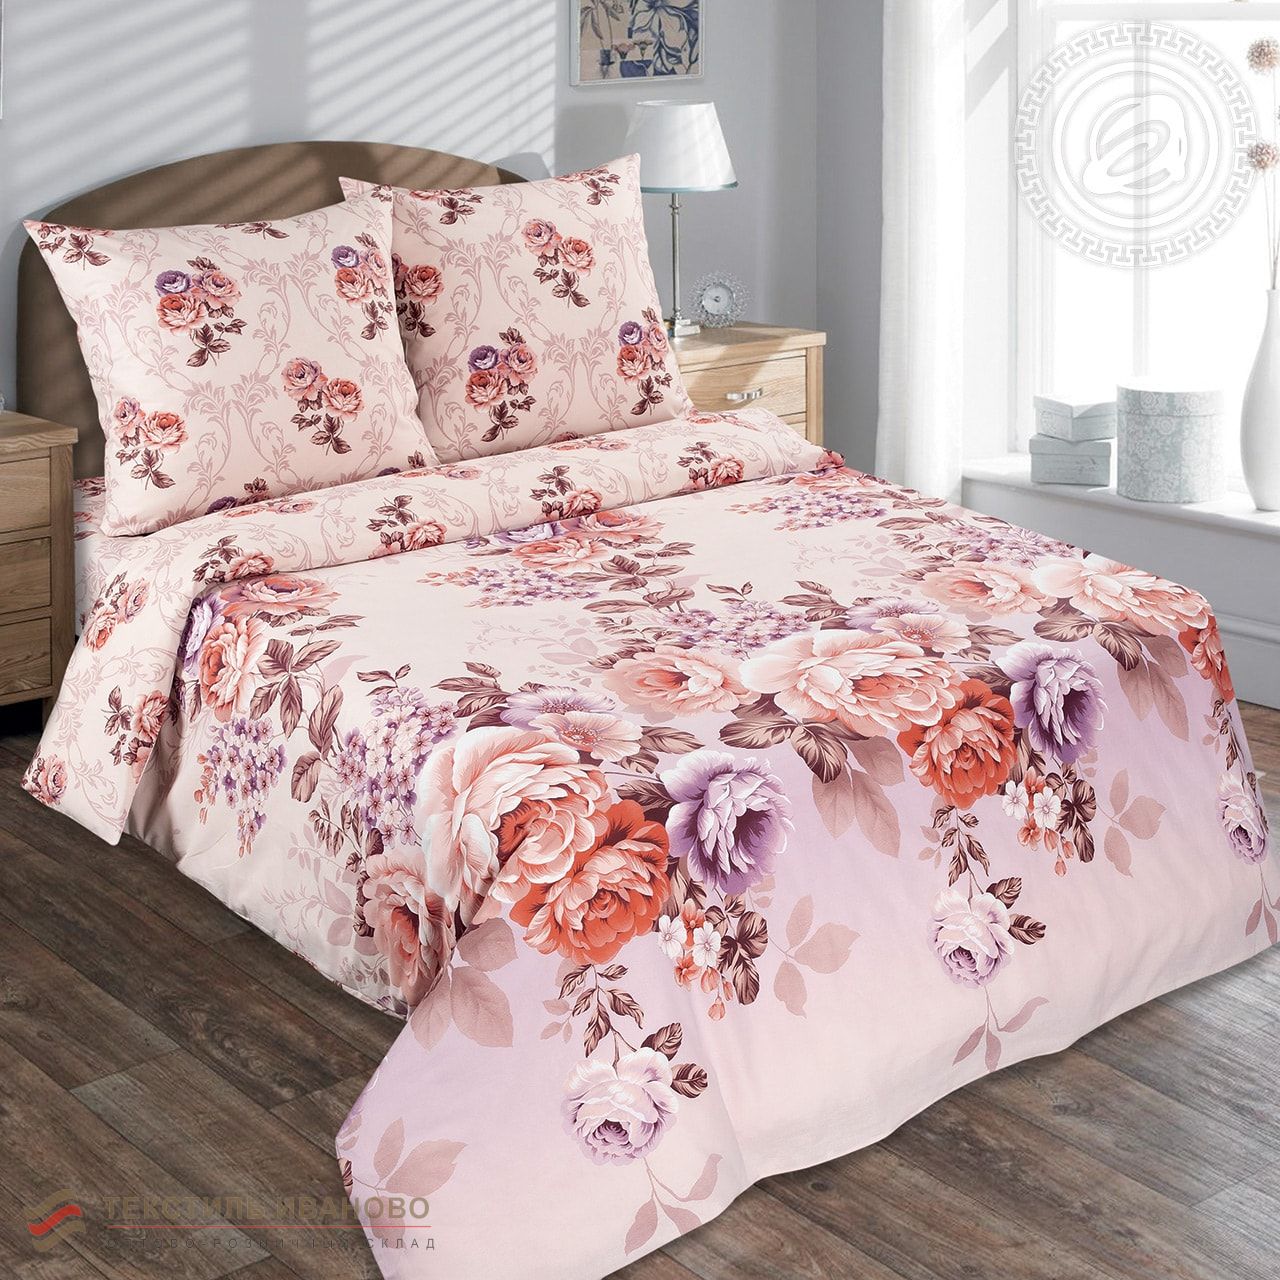  Комплект постельного белья Карамельная роза поплин De Luxe, фото 1 